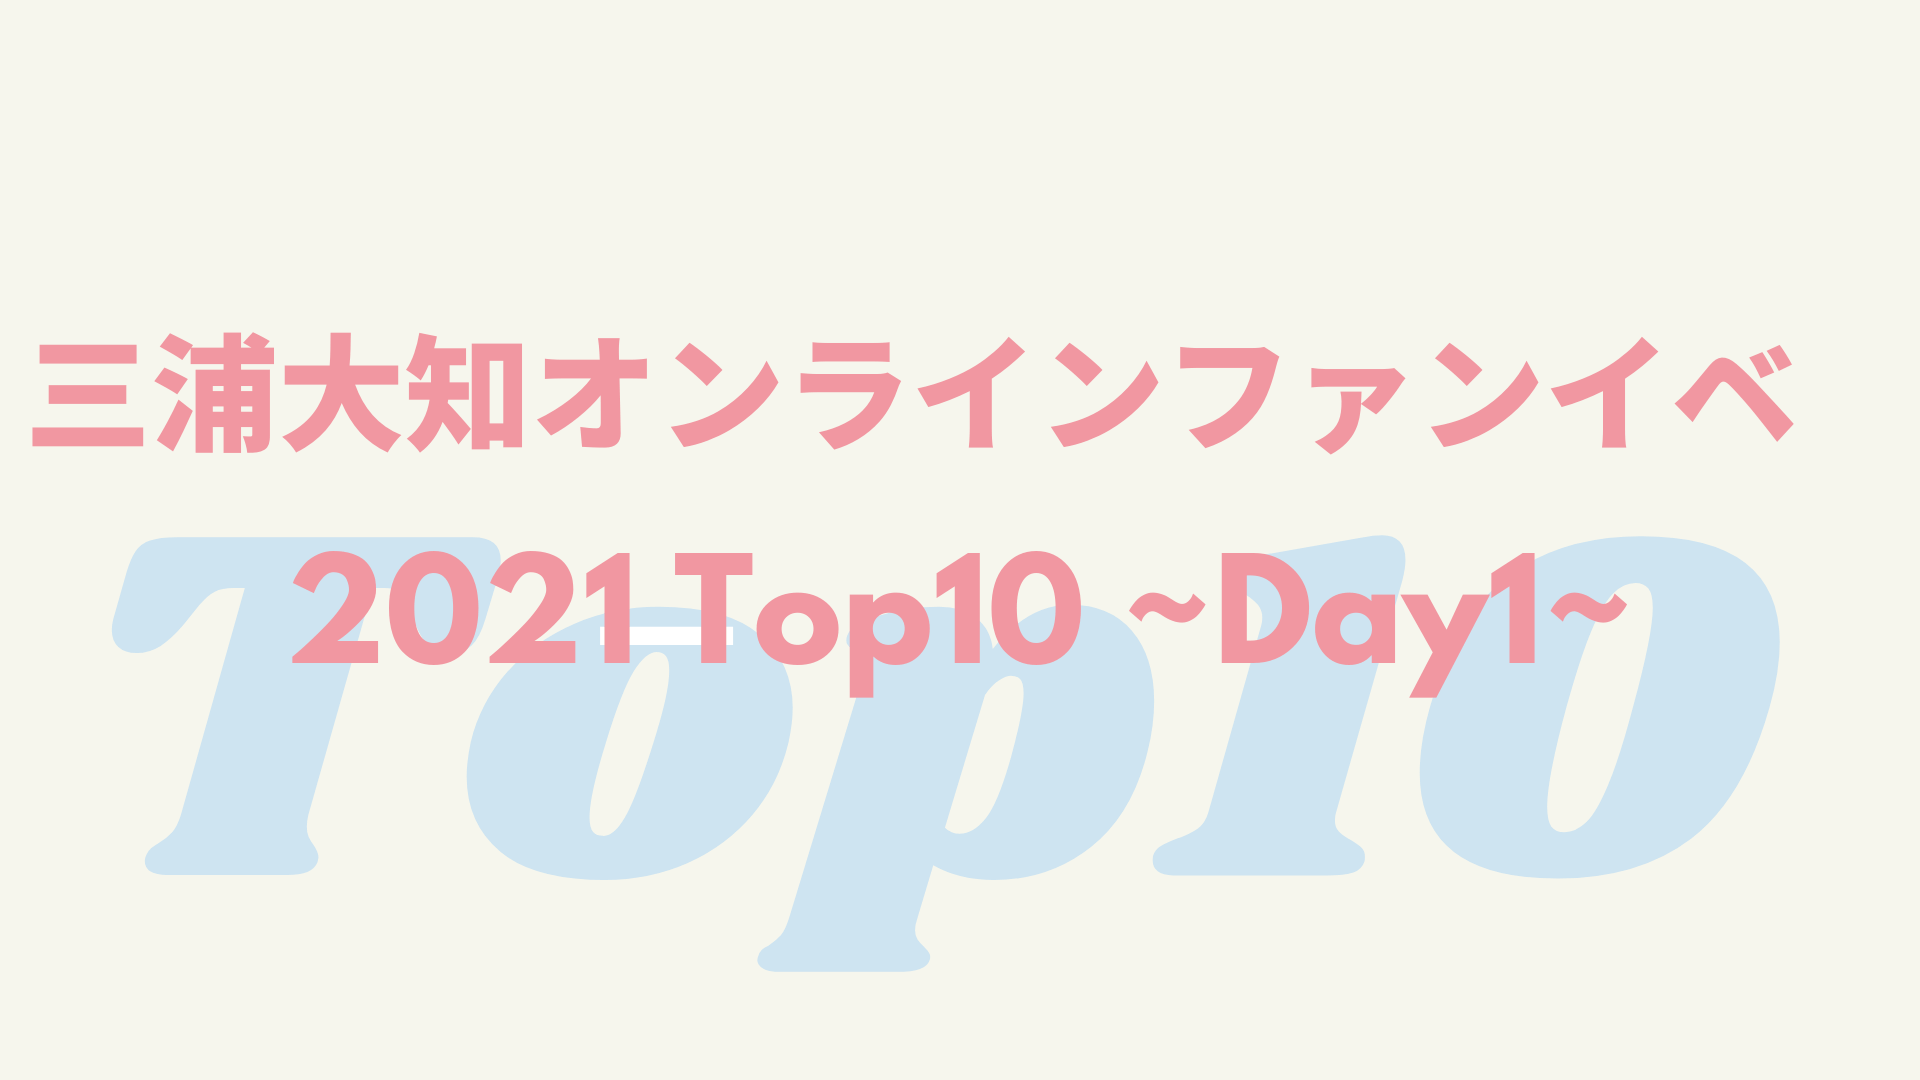 Top10-1